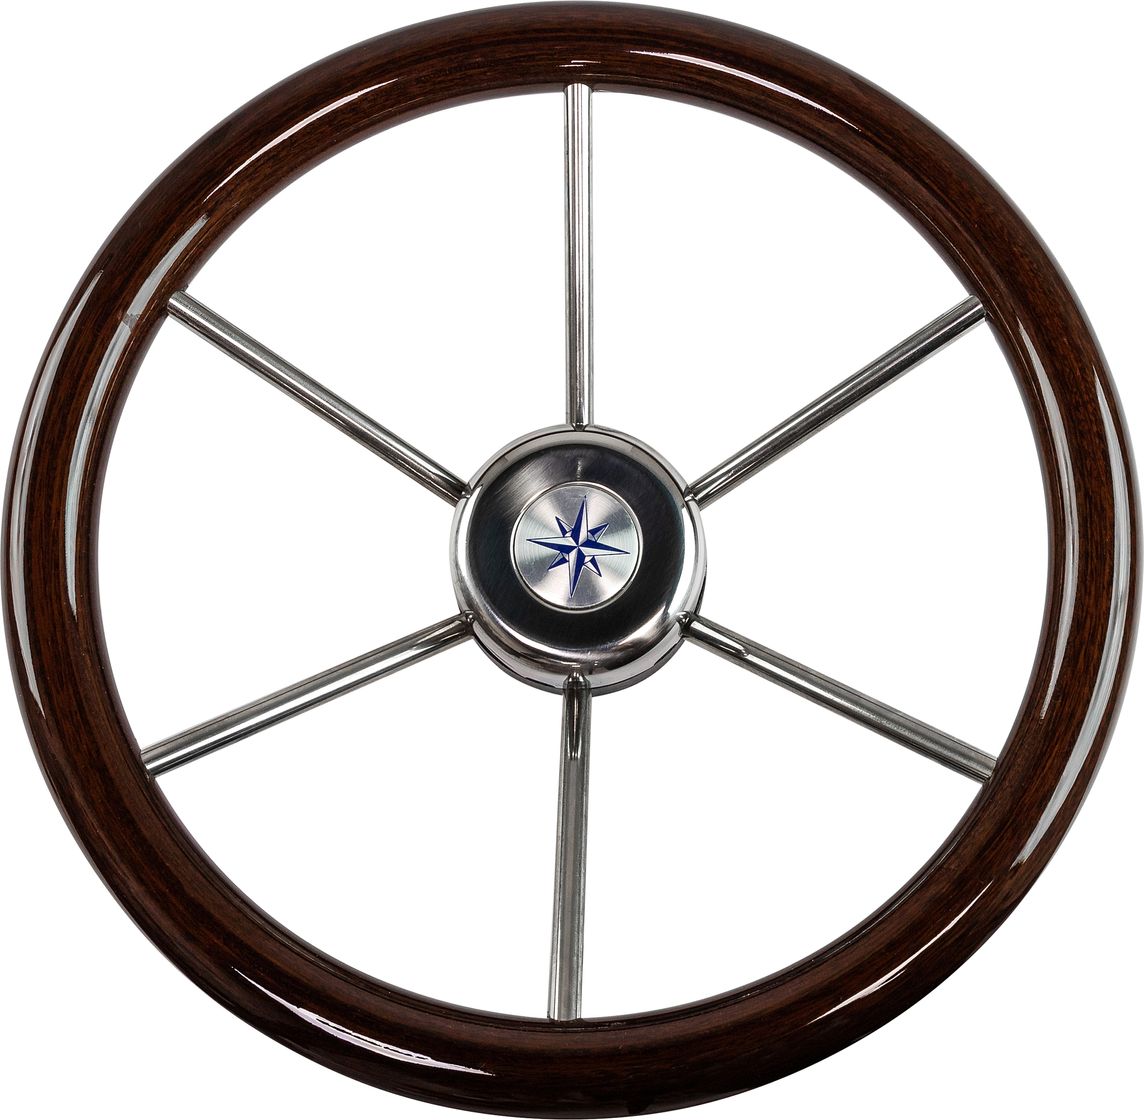 Рулевое колесо LEADER WOOD деревянный обод серебряные спицы д. 360 мм VN7360-33 аромадиффузор zdk r55 dark wood